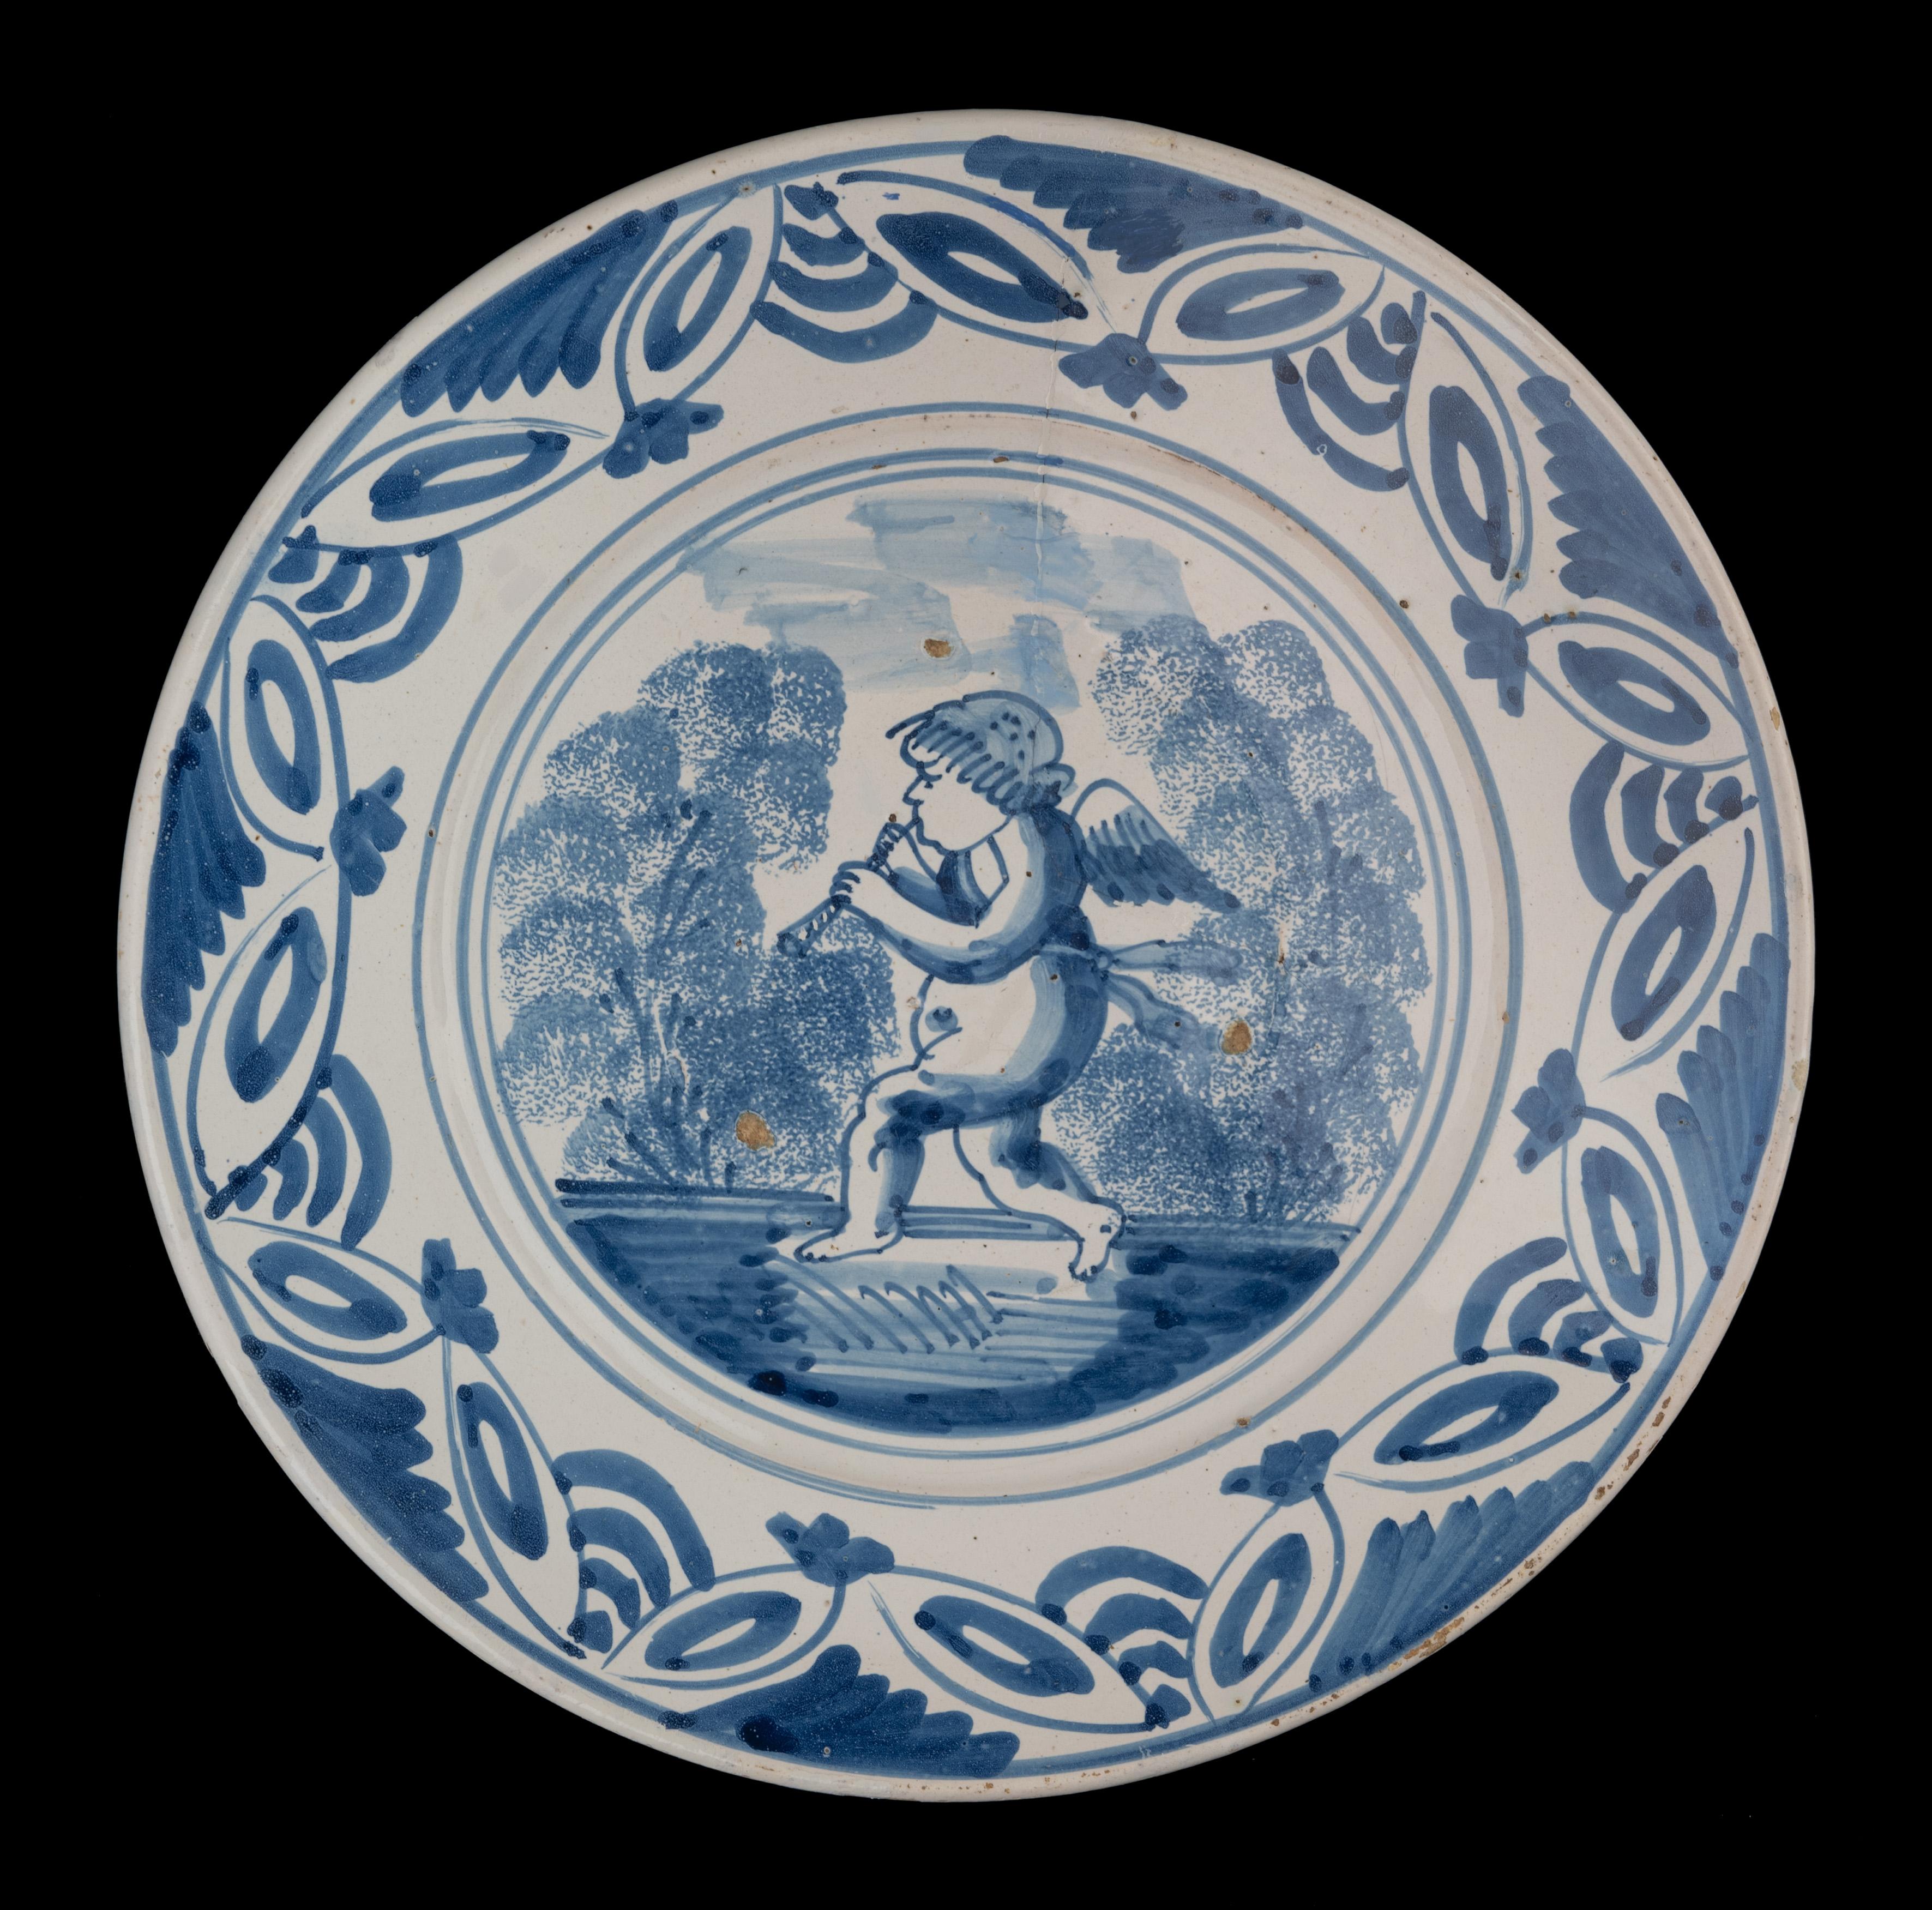 Blaue und weiße Schale mit einem Putto. Die Niederlande, 1660-1700 

Die blau-weiße Schale hat einen breiten, ausladenden Flansch und ist in der Mitte mit einem gehenden, Flöte spielenden Putto in einer vereinfachten Landschaft in einem